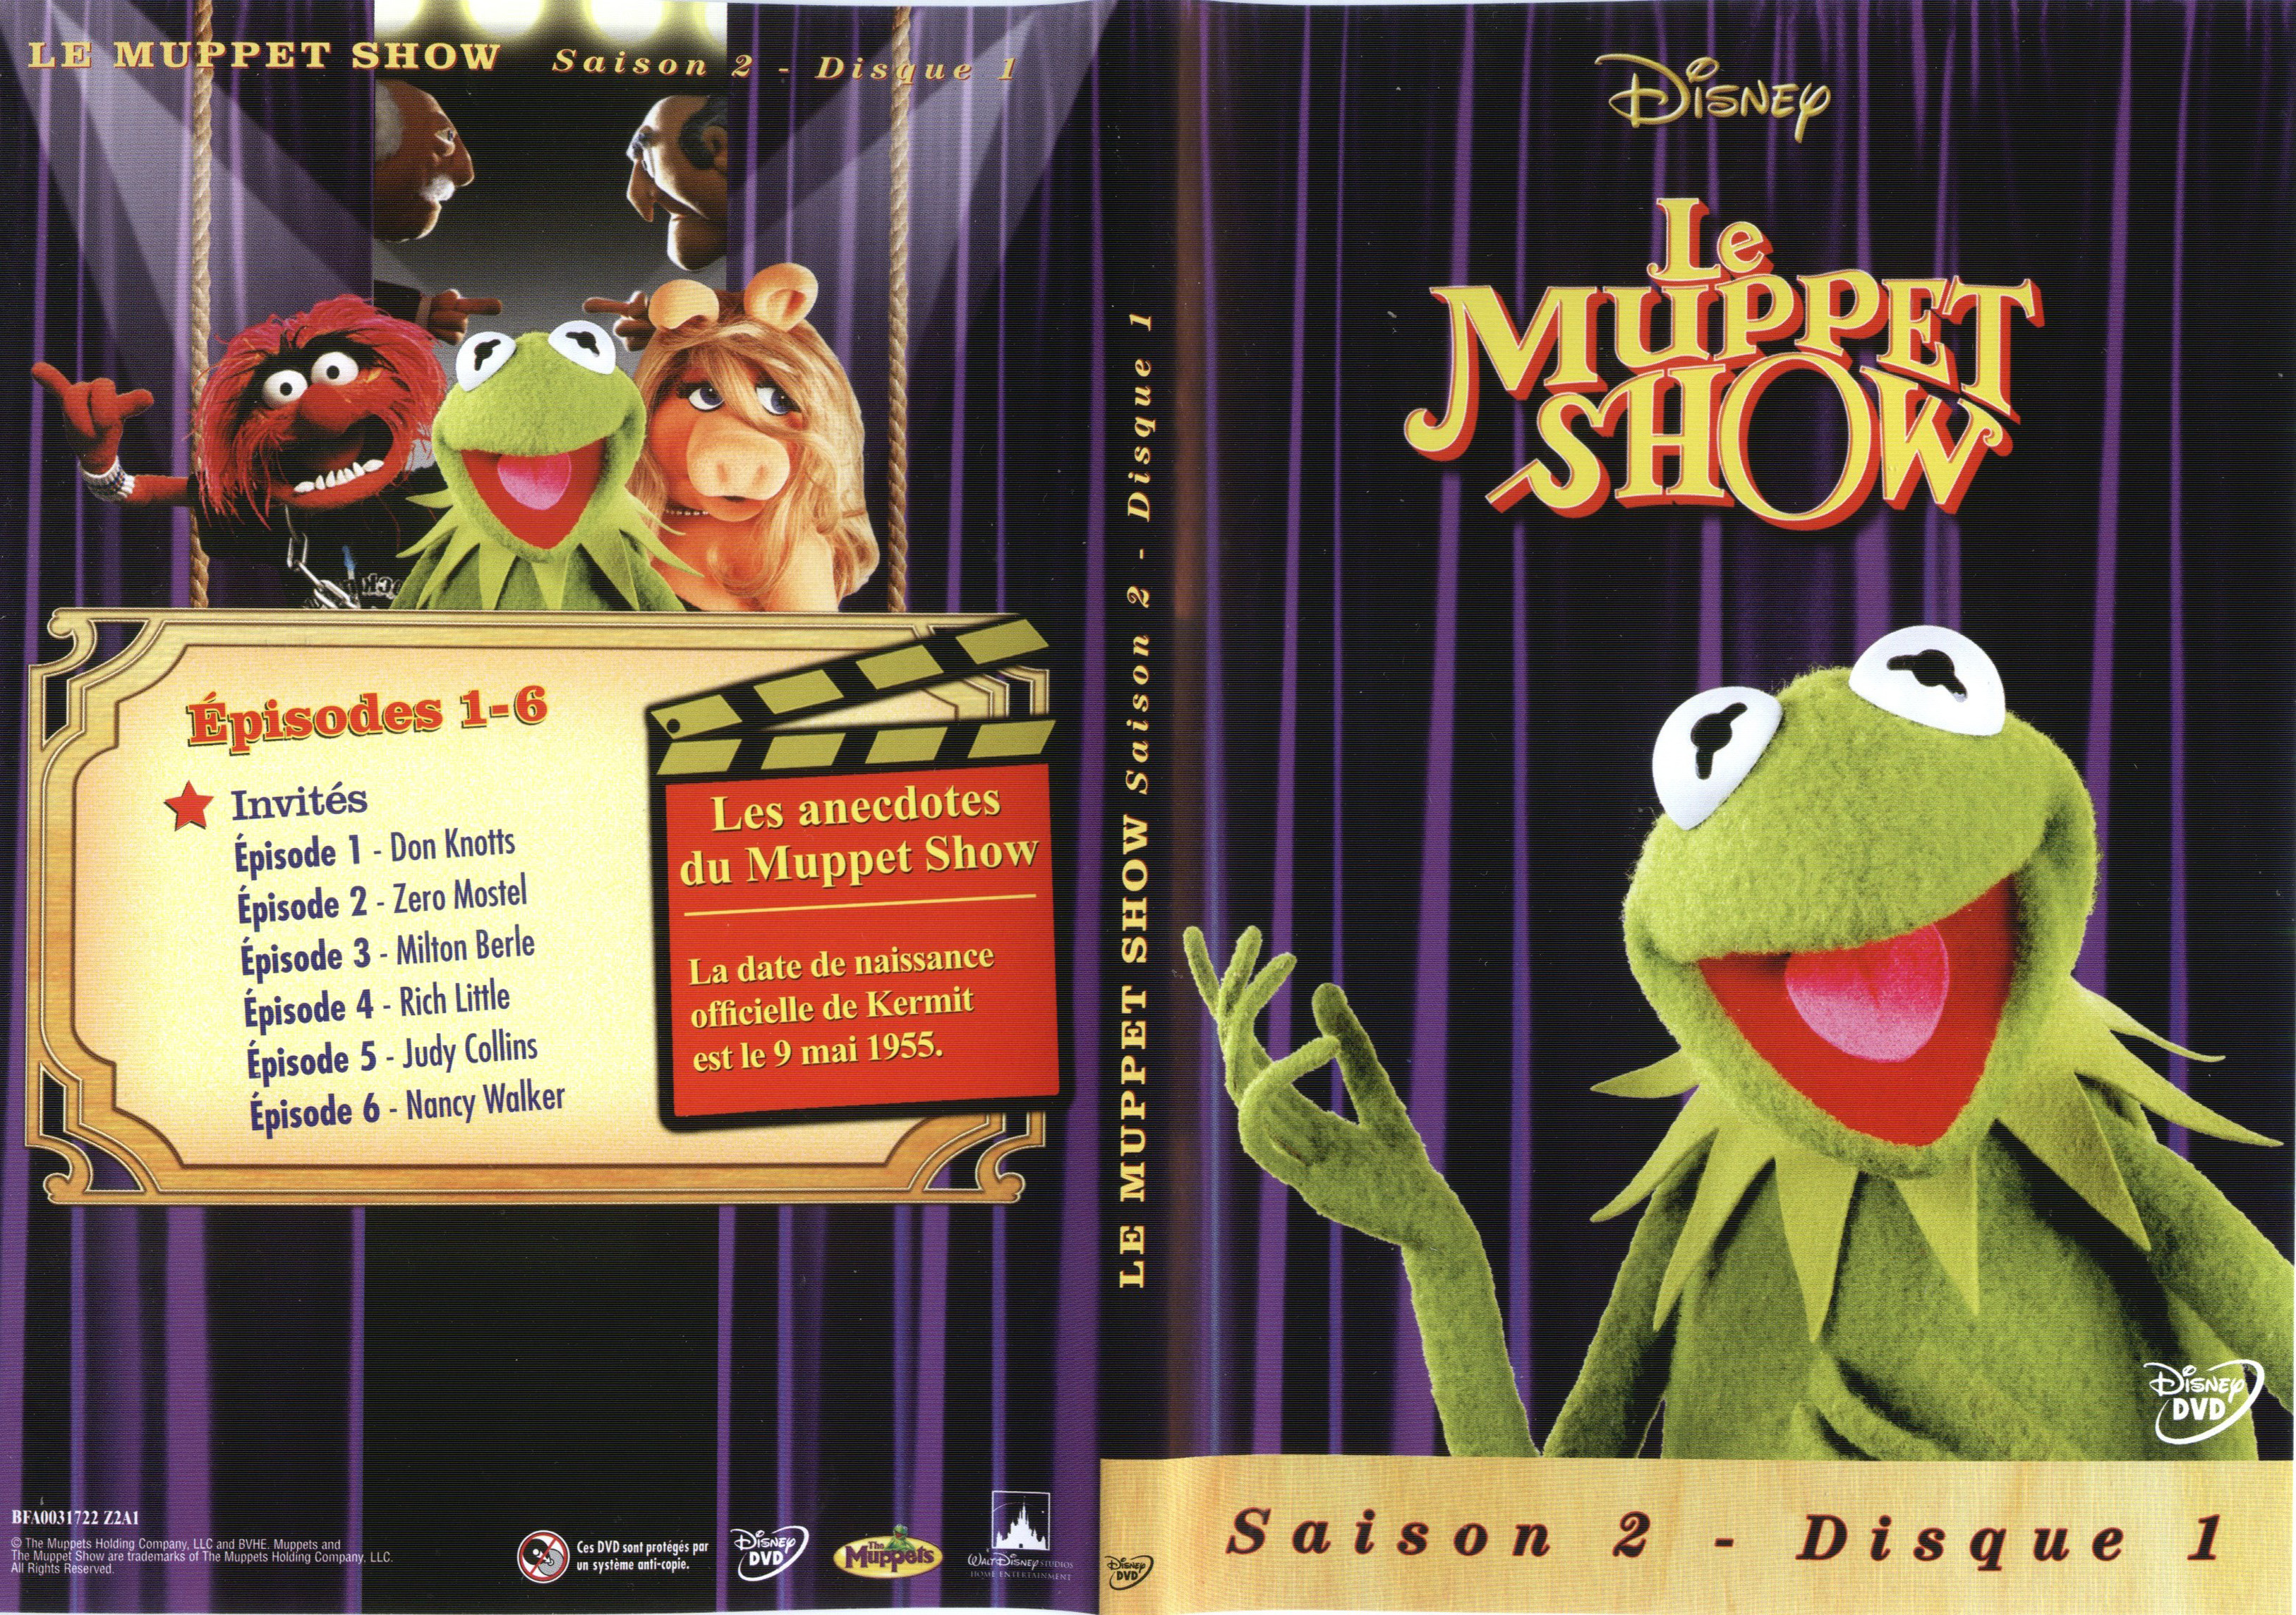 Jaquette DVD Le muppet show Saison 2 DVD 1